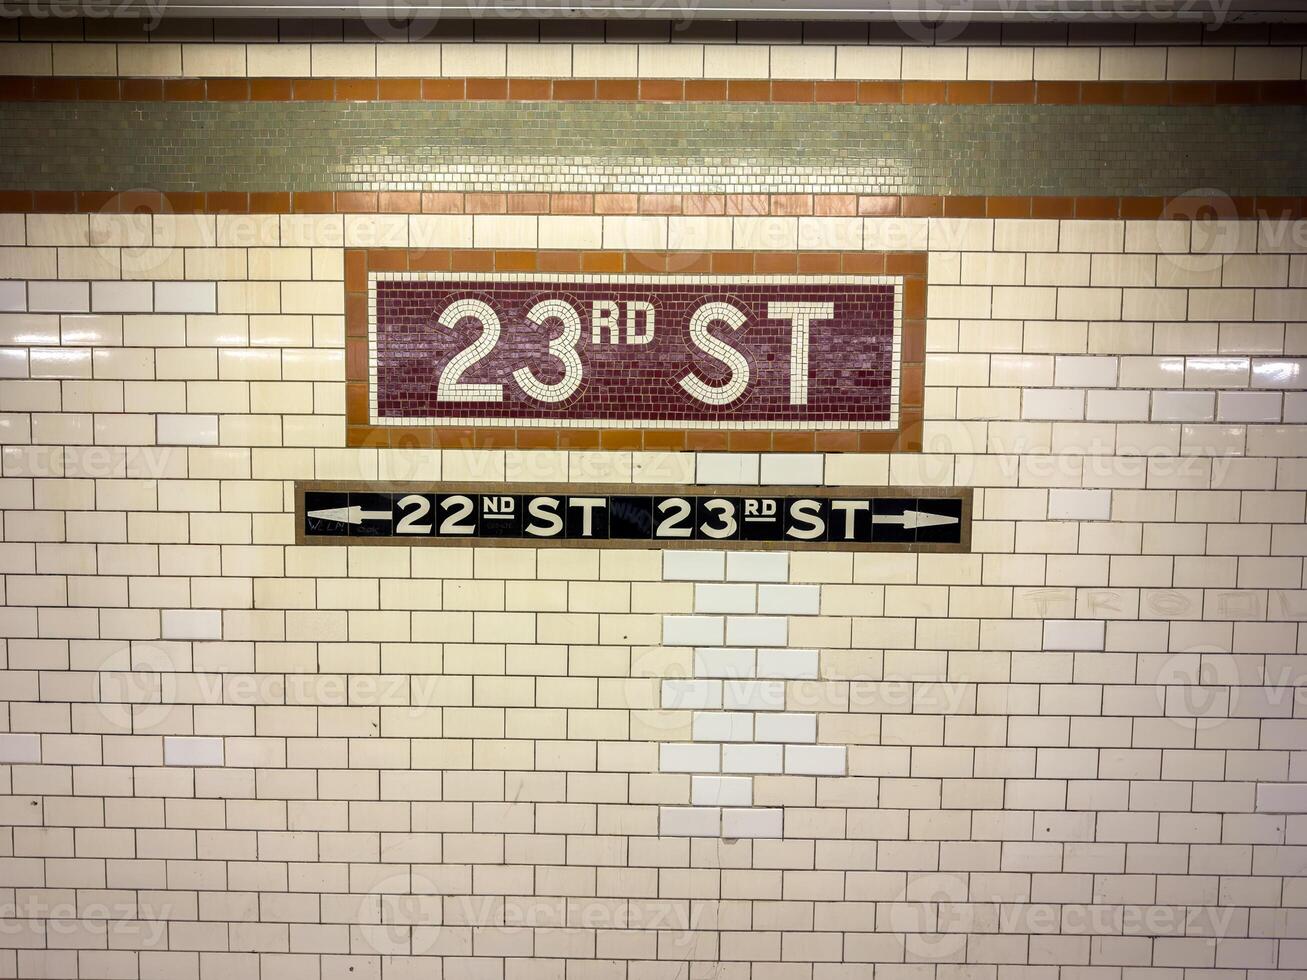 23º rua estação - Novo Iorque cidade foto